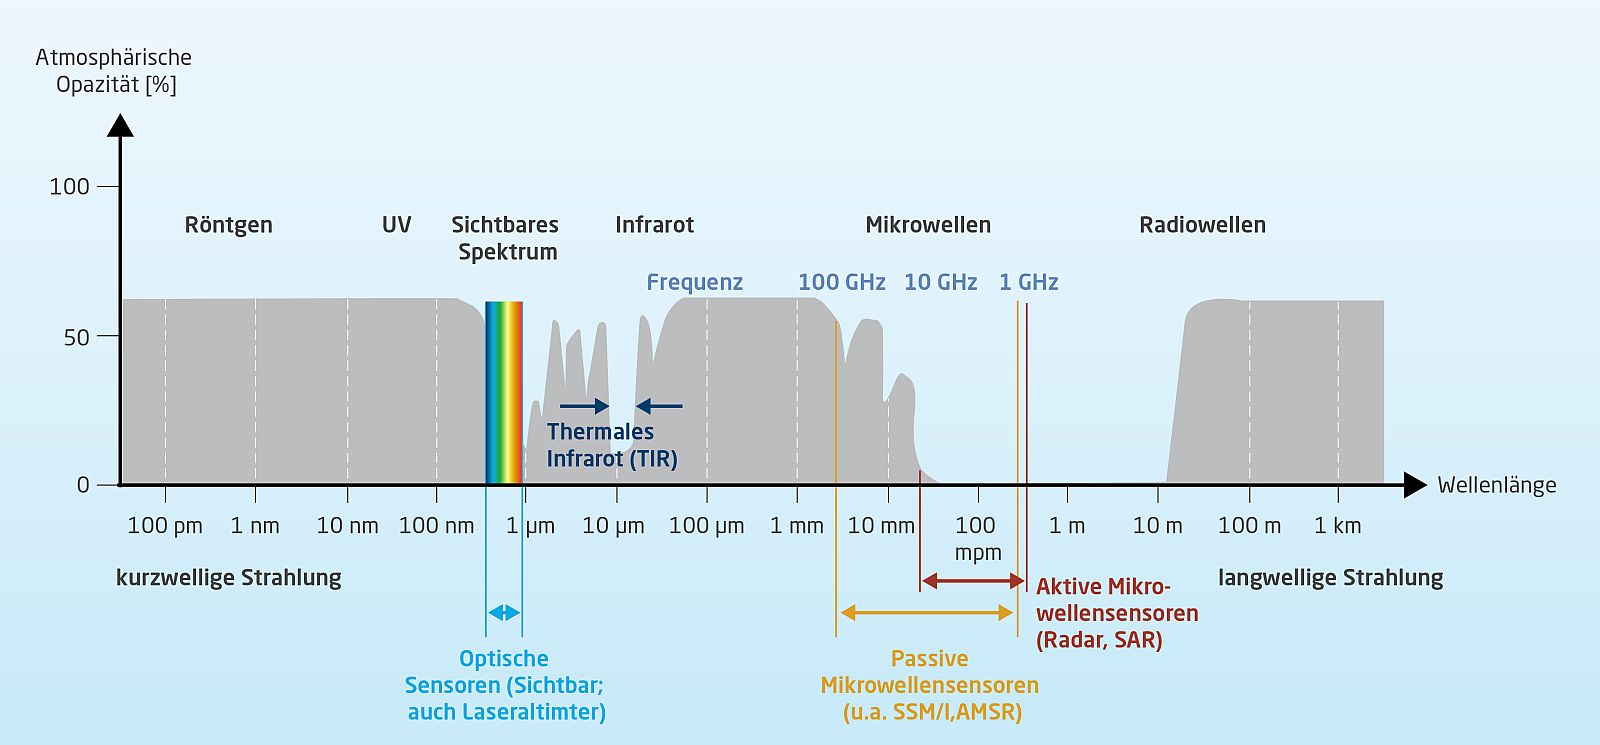 Schema der Messbereiche von Satelliten in Abhängigkeit der Wellenlänge